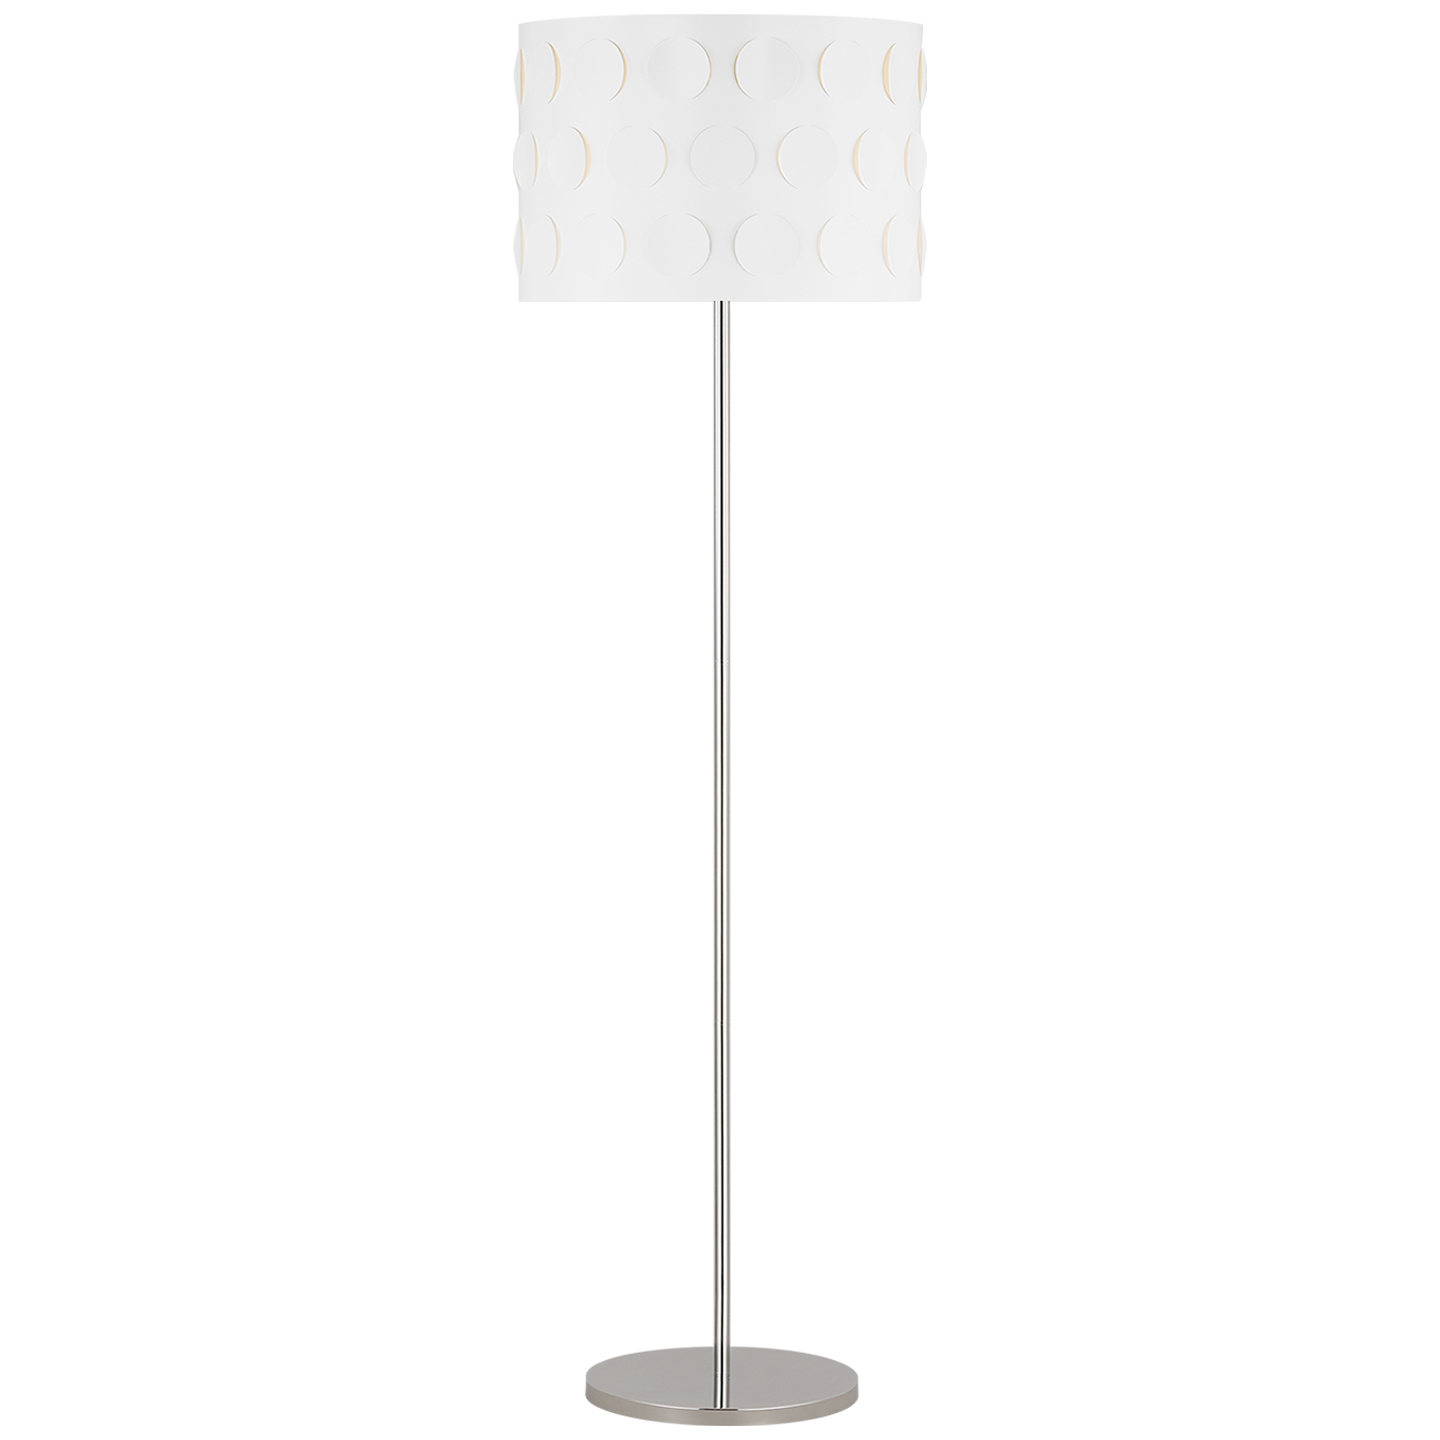 Dottie 1-Light Floor Lamp